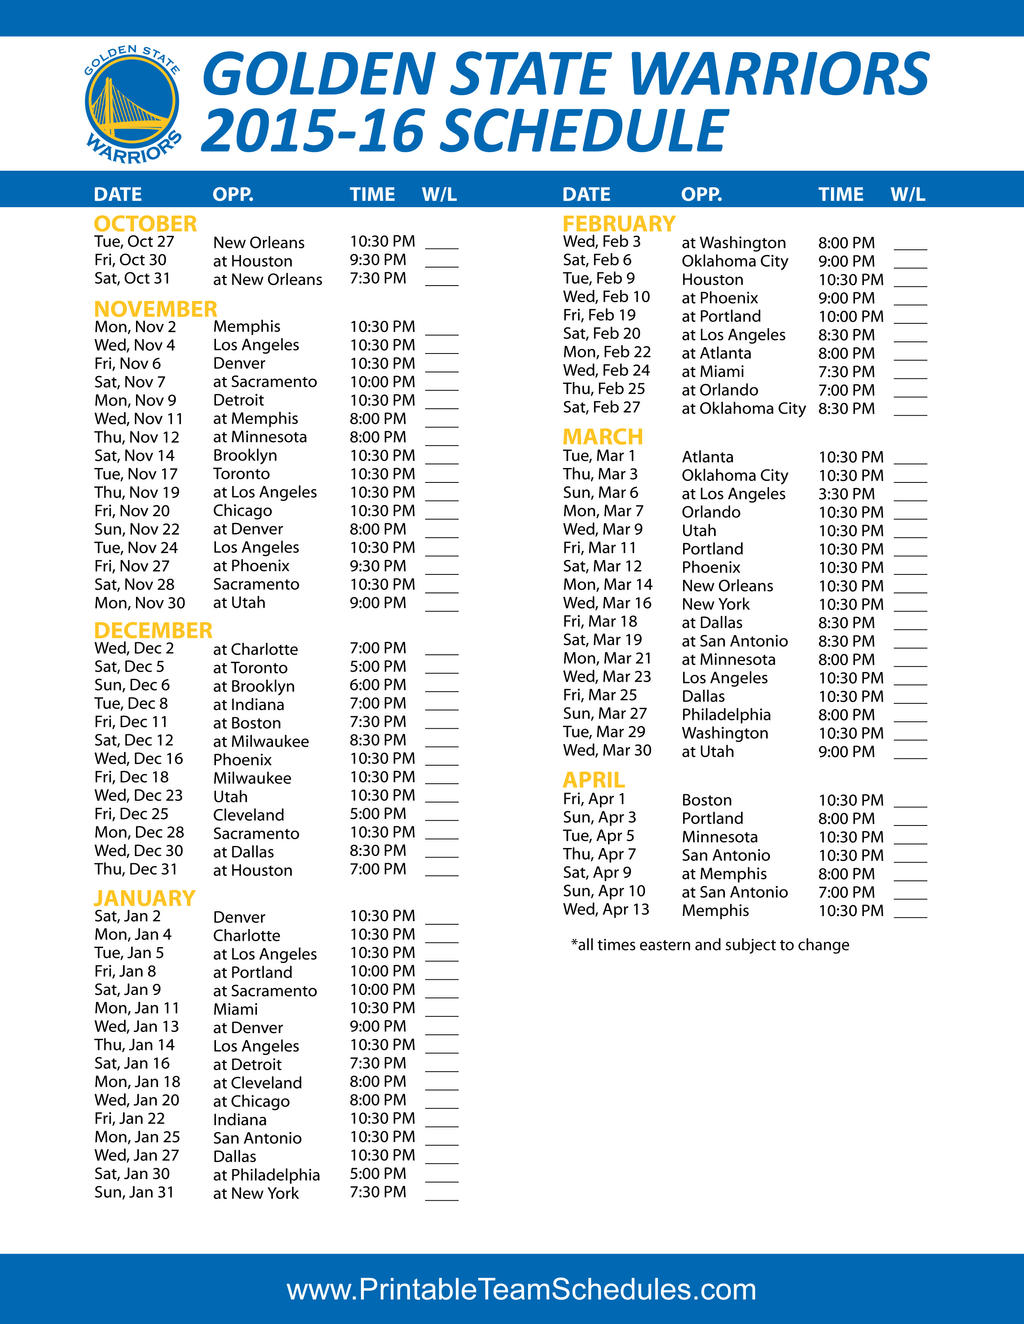 201516 Golden State Warriors Schedule by OTfantasyfootball on DeviantArt